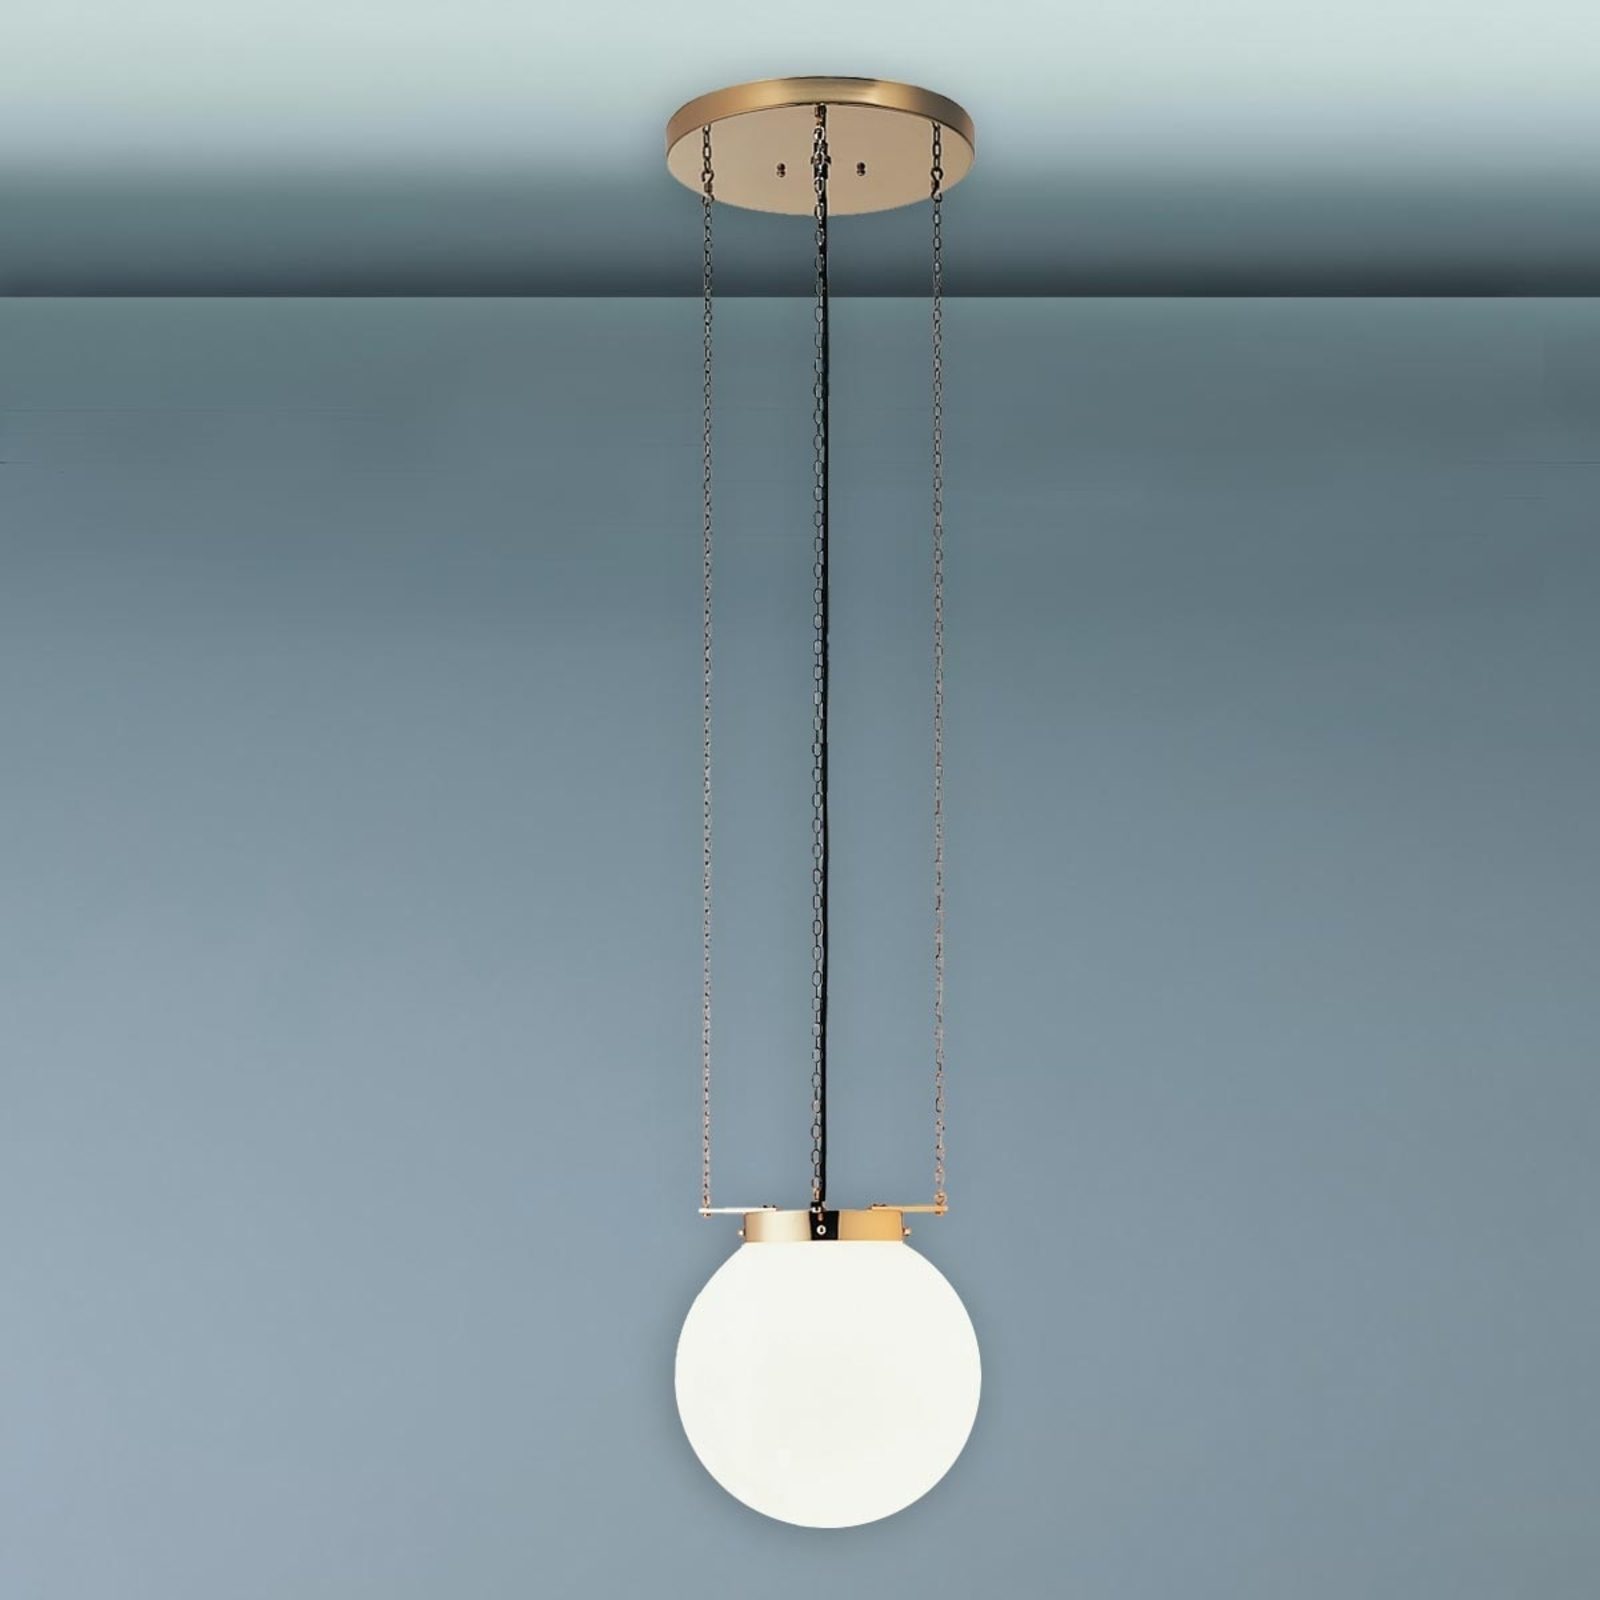 Hanglamp in Bauhaus-stijl, messing, 35 cm